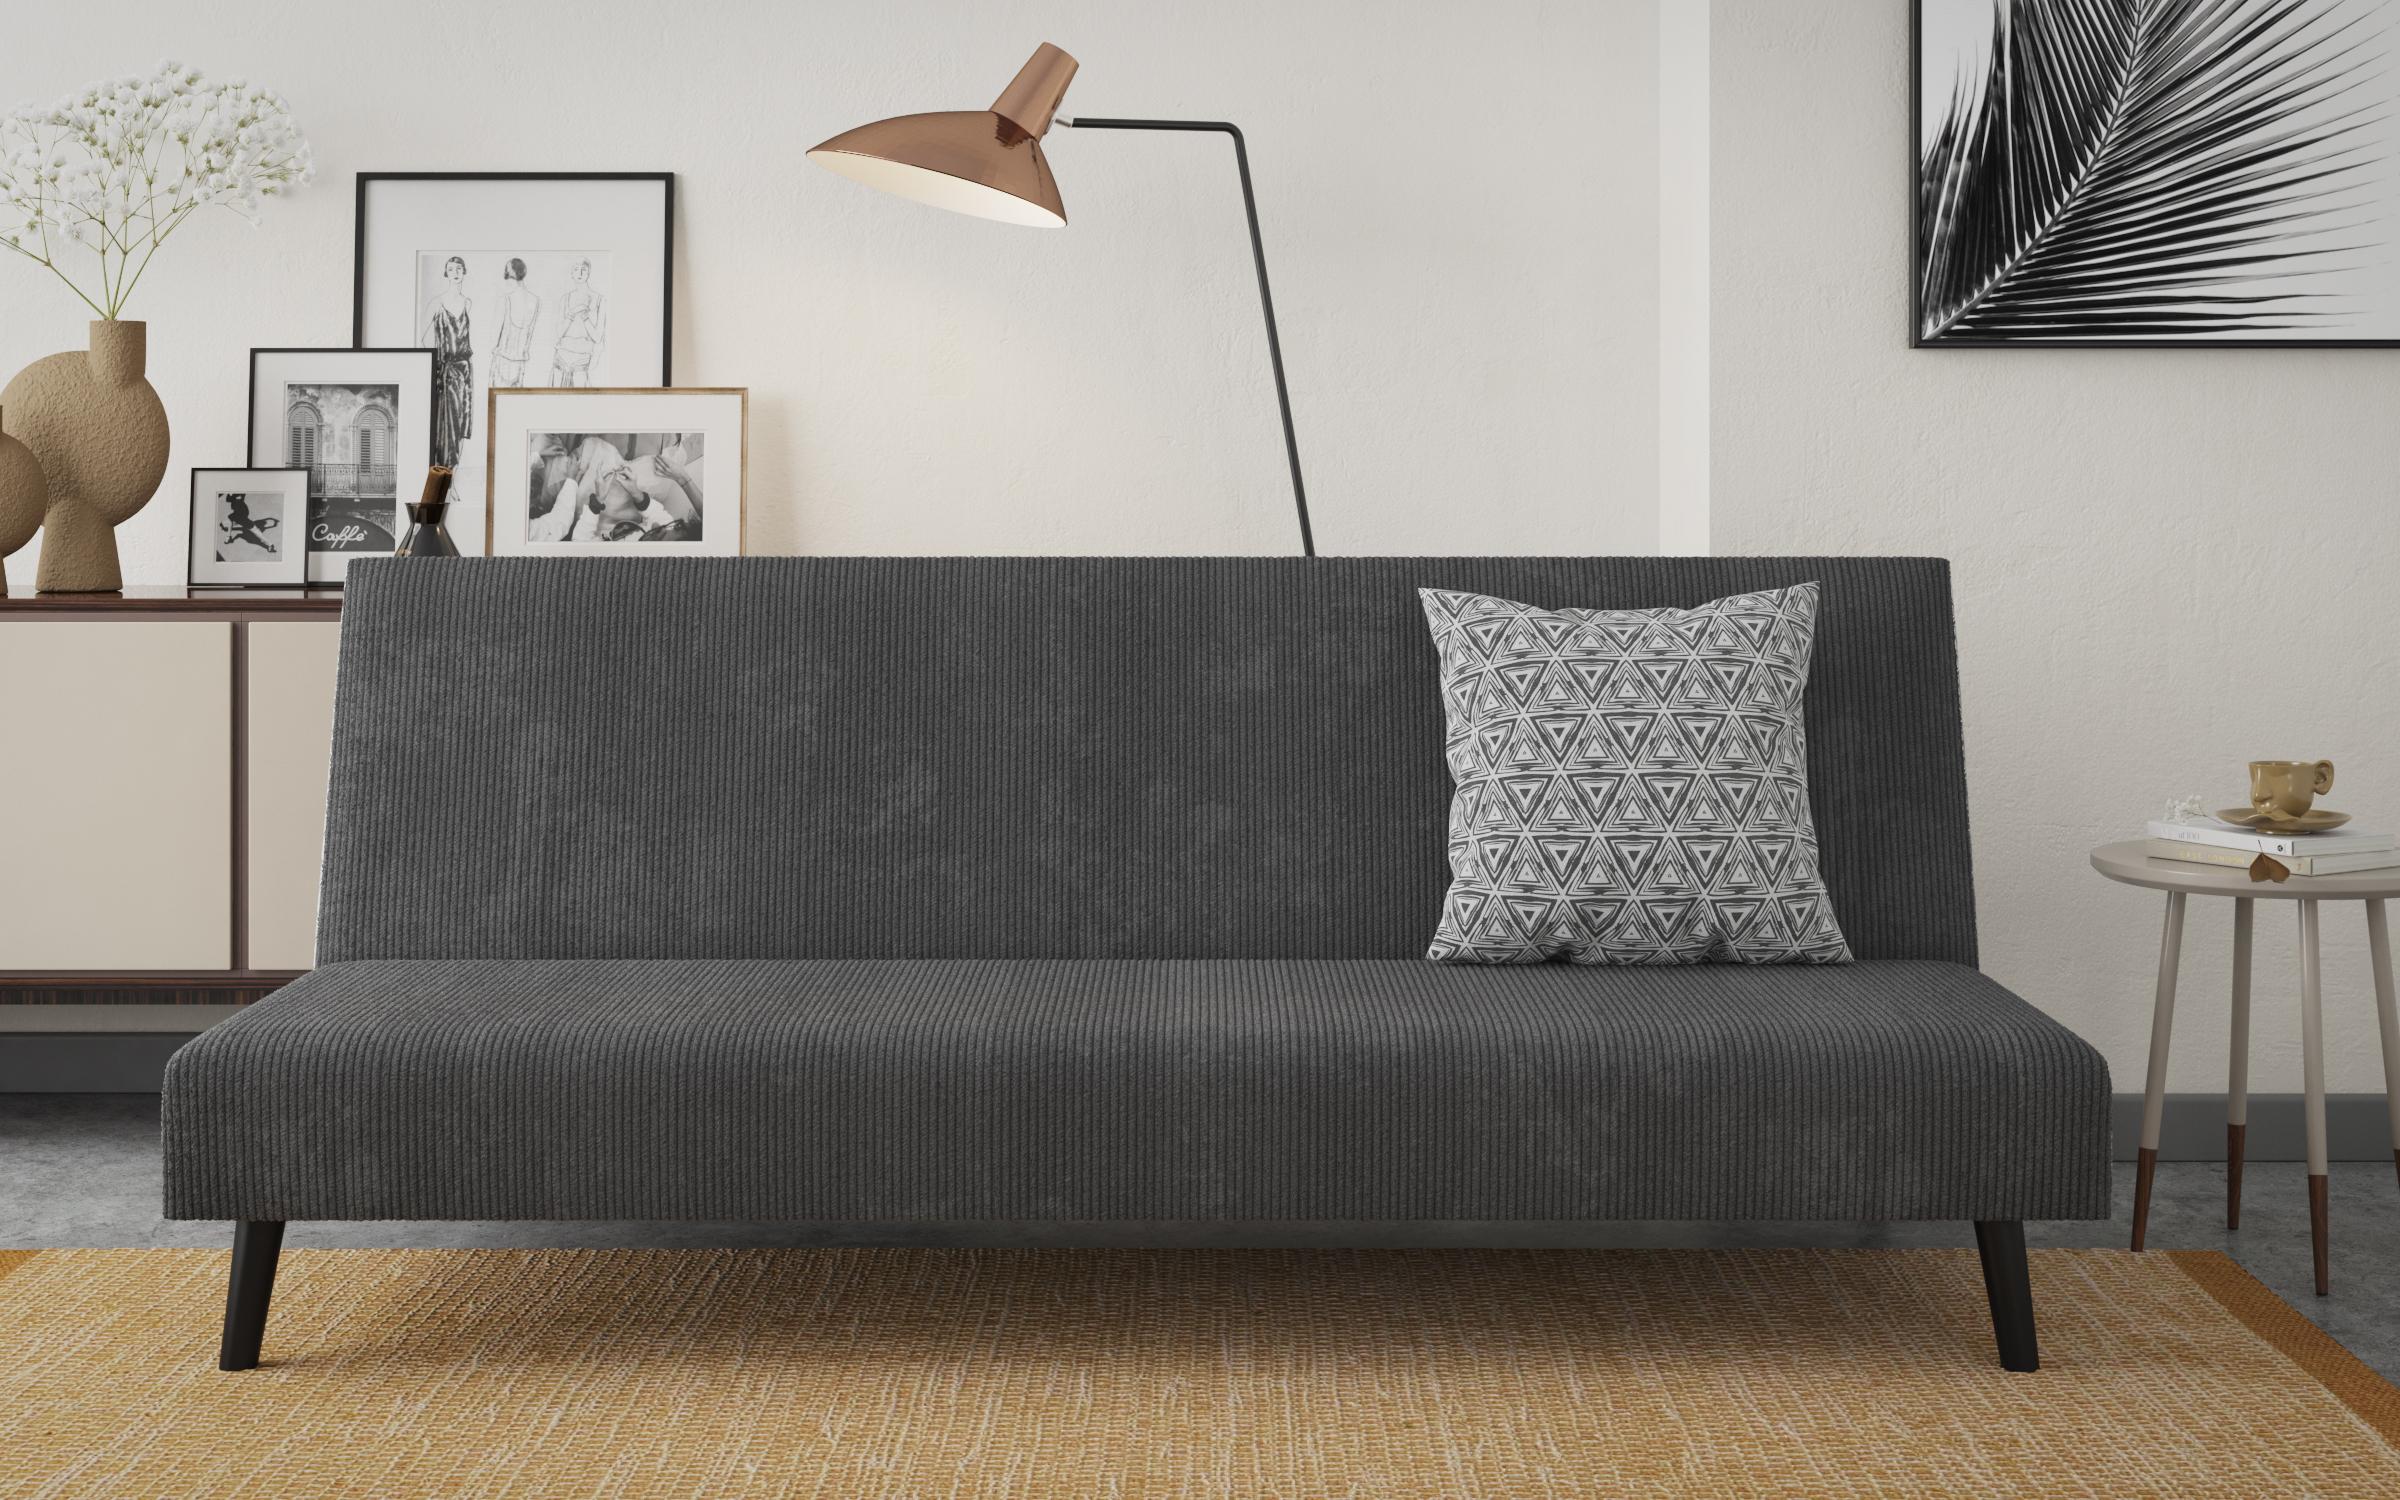 Κλικ κλακ καναπές  Vaskon, σκούρο γκρί  + print  1